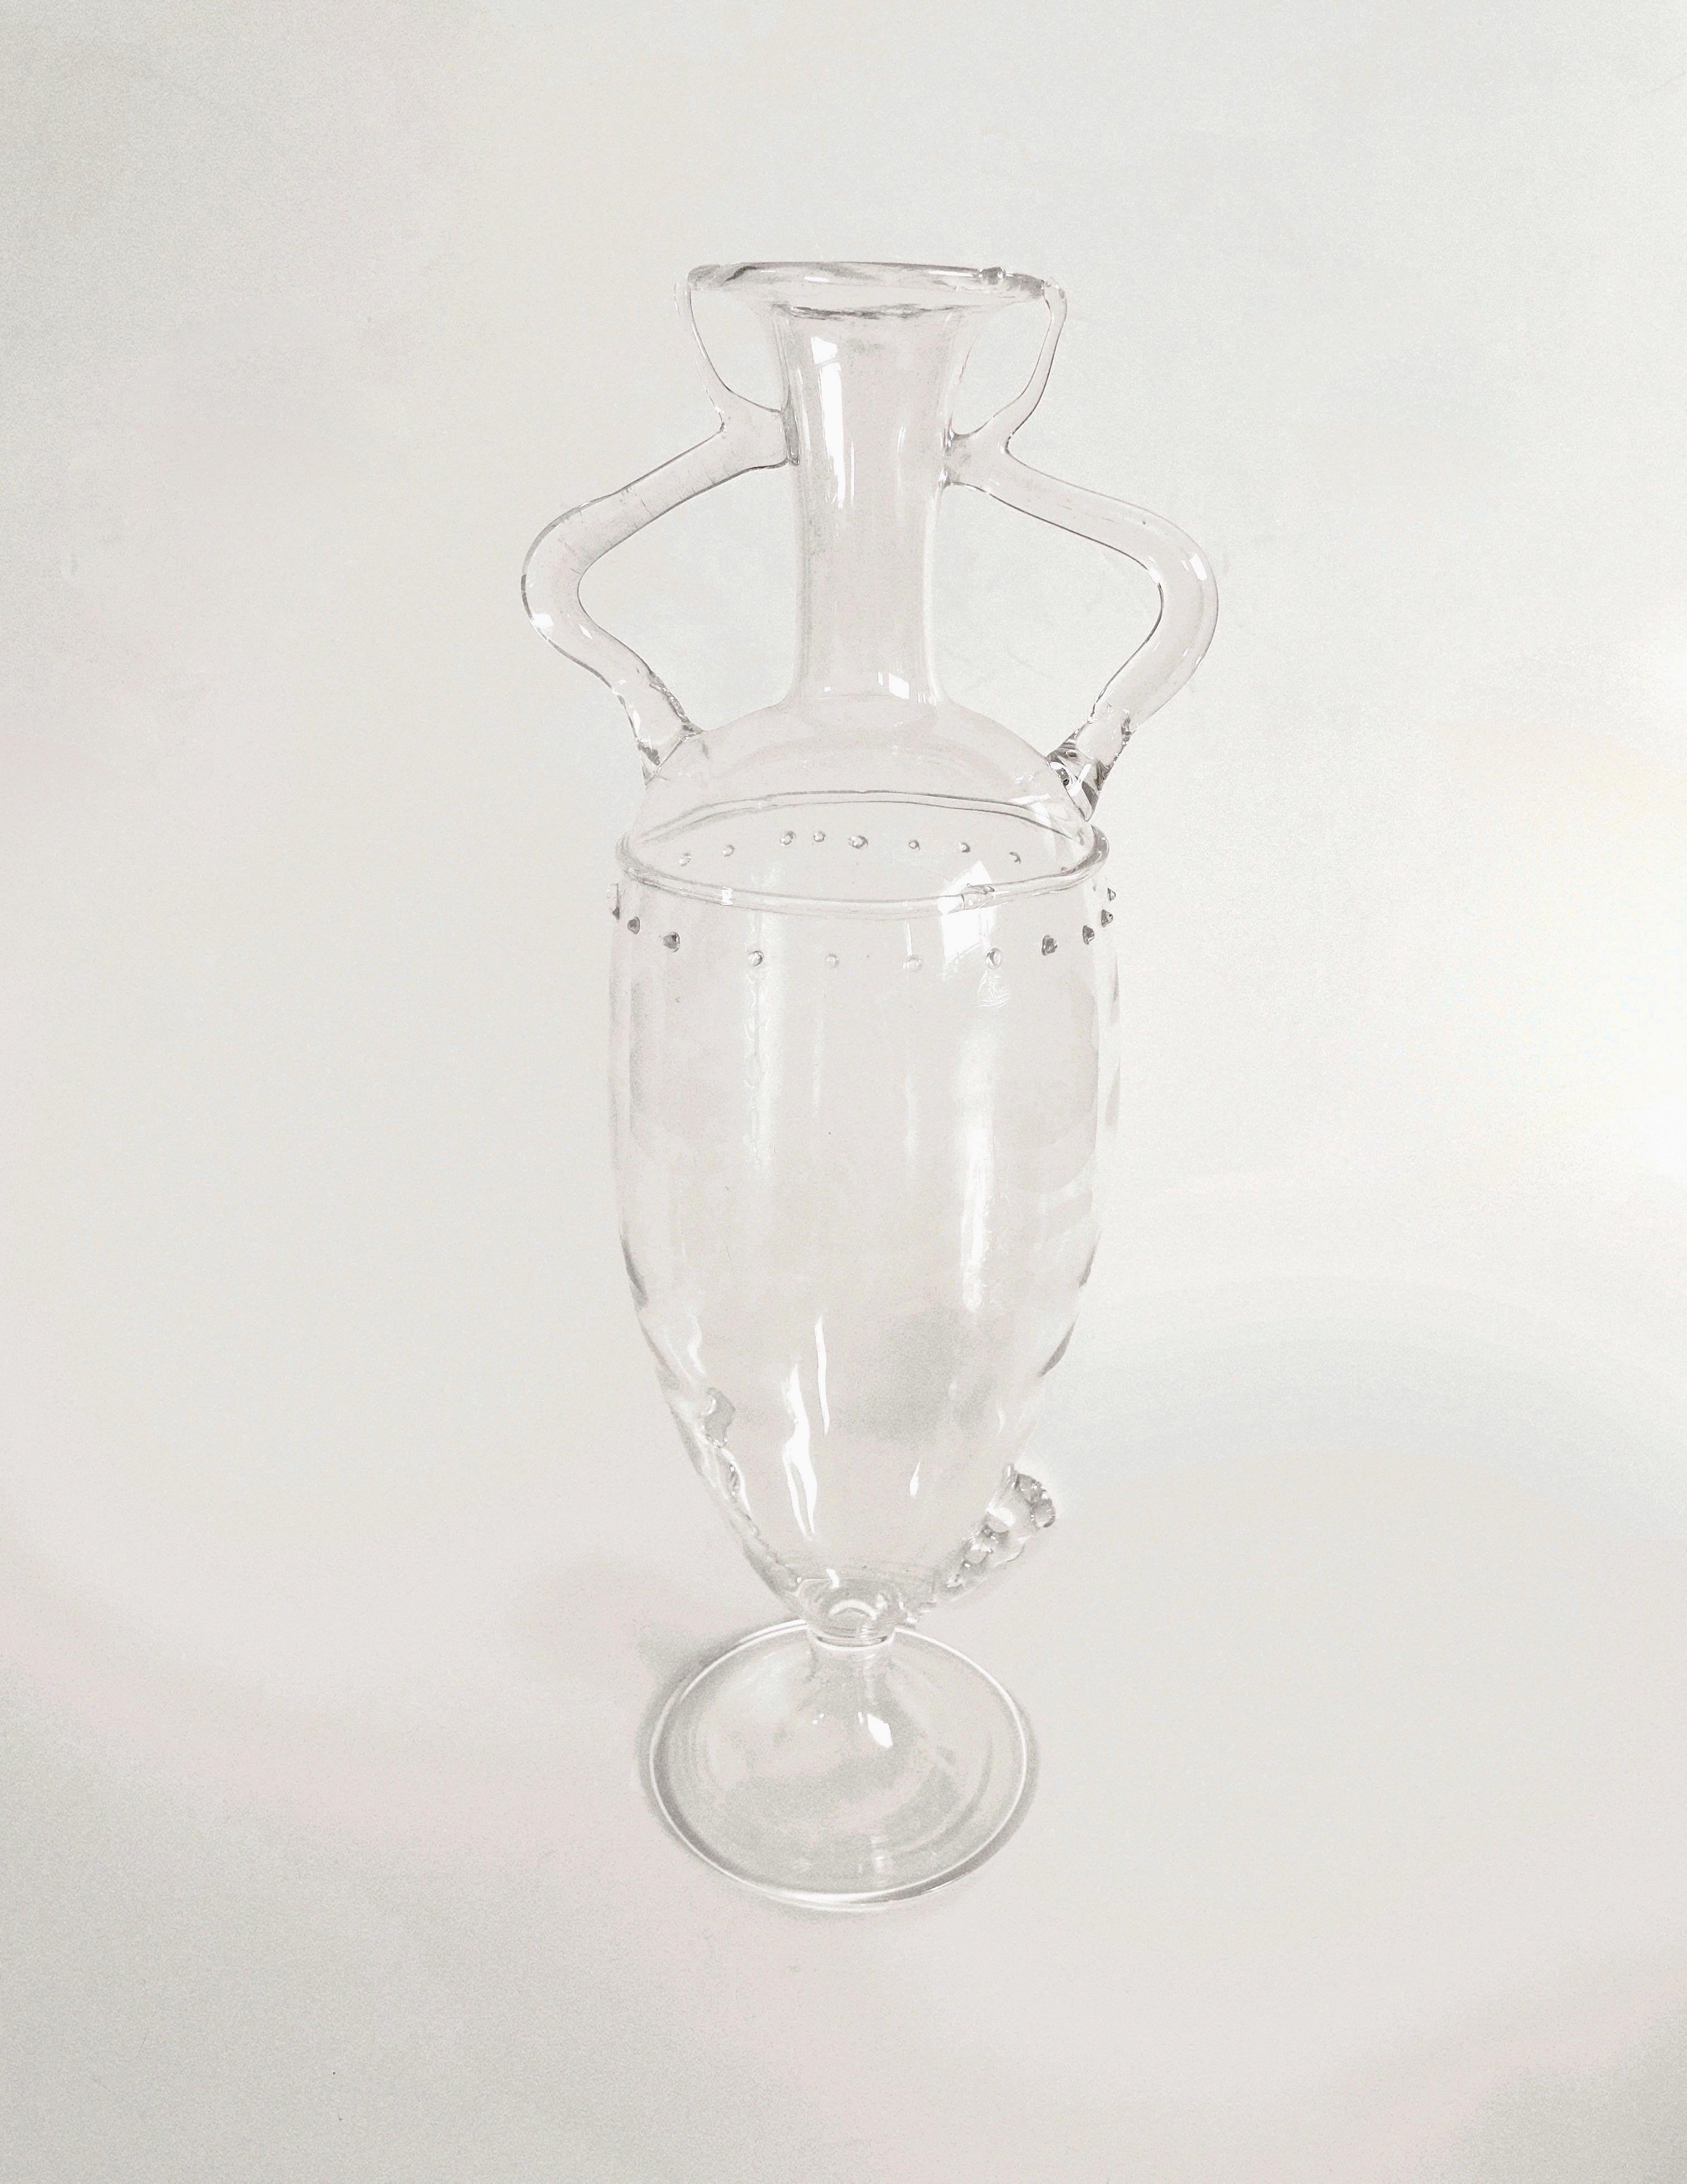 Délicat vase en verre clair de Murano par Vittorio Zecchin vers 1930. État impeccable, sans ébréchures ni fissures. Le prix est pour un vase, le vase partenaire est disponible sur une liste séparée.